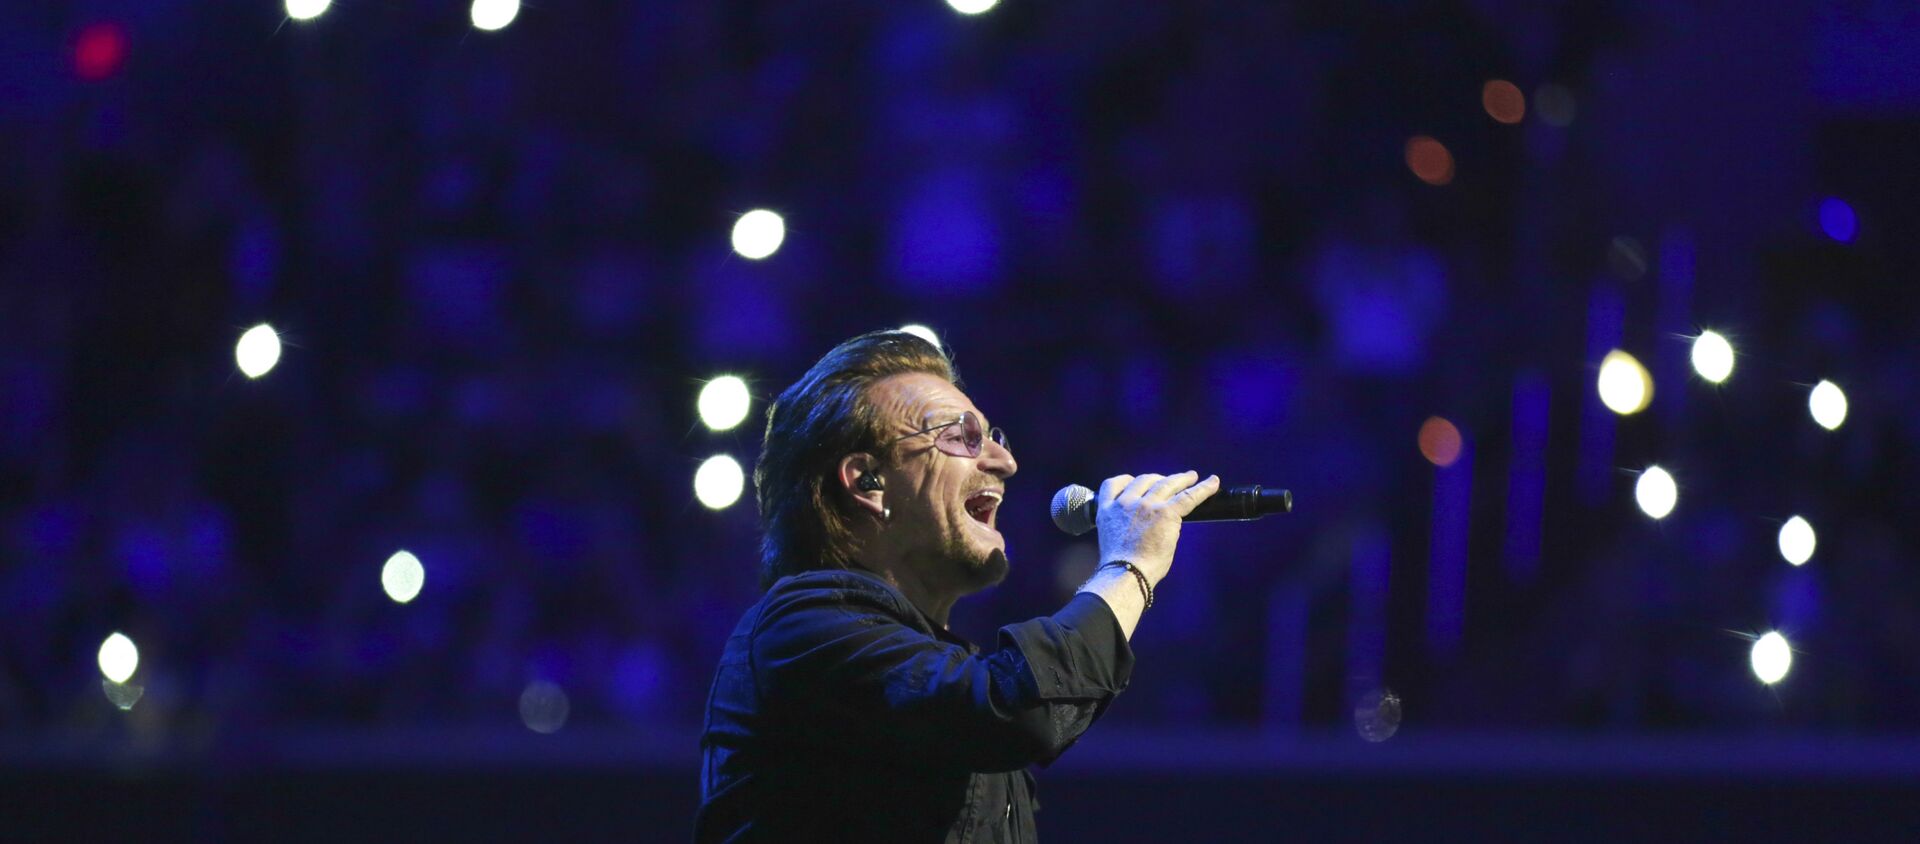 İrlandalı ünlü Rock müzik grubu U2’nin solisti Bono - Sputnik Türkiye, 1920, 06.12.2019